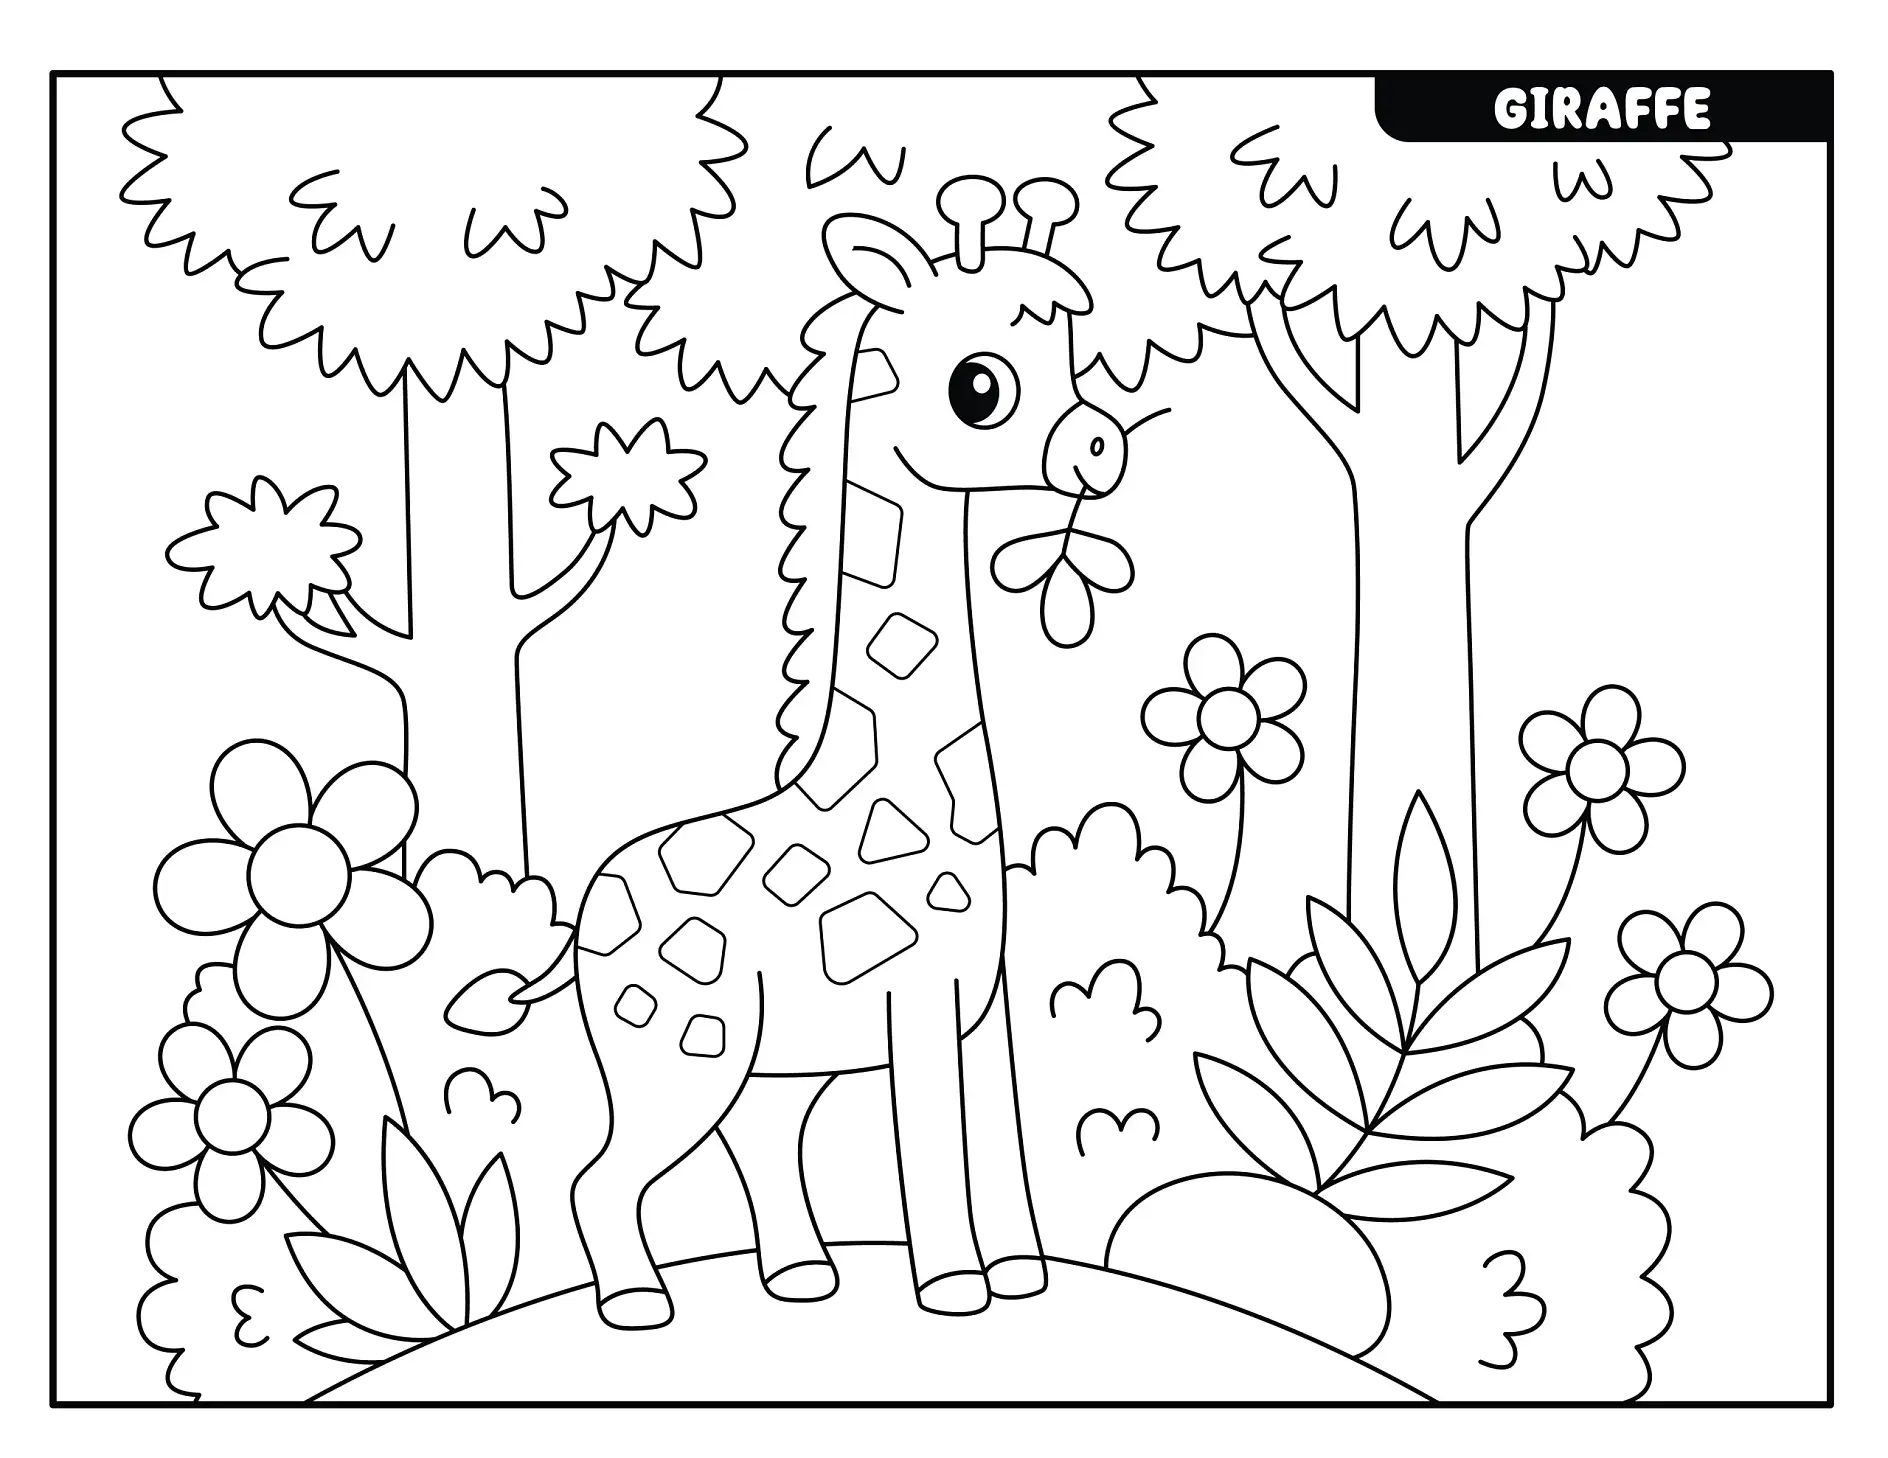 Ausmalbild Giraffe steht im Dschungel mit Blumen und Bäumen